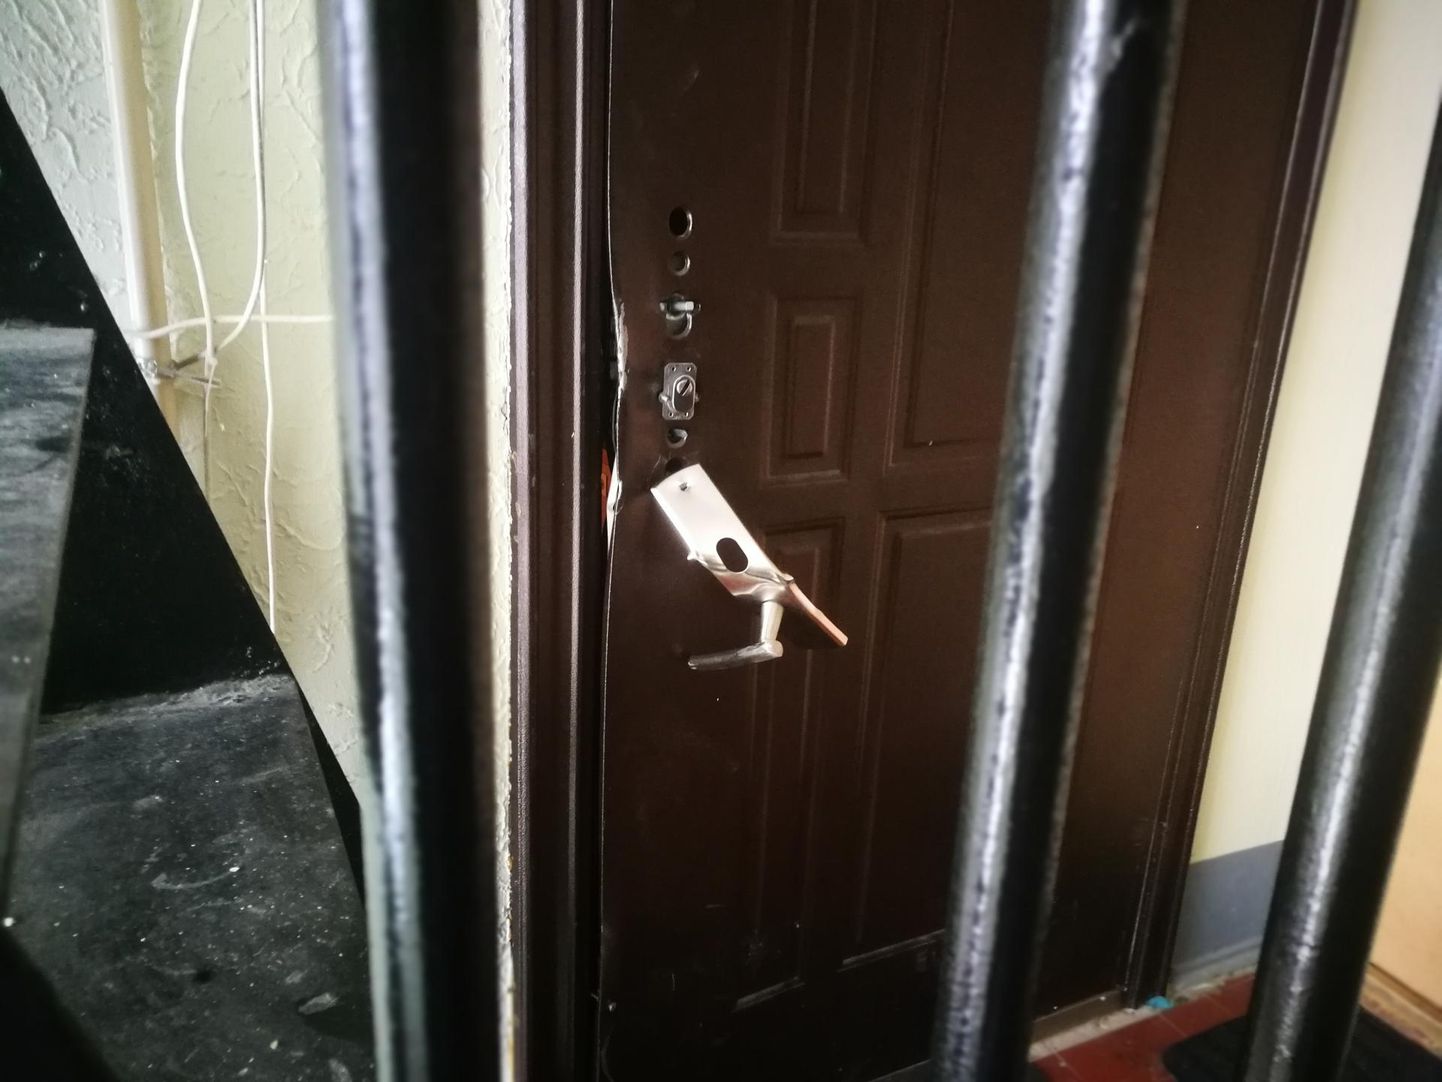 Чтобы поймать подозреваемого, полиции пришлось взломать дверь.